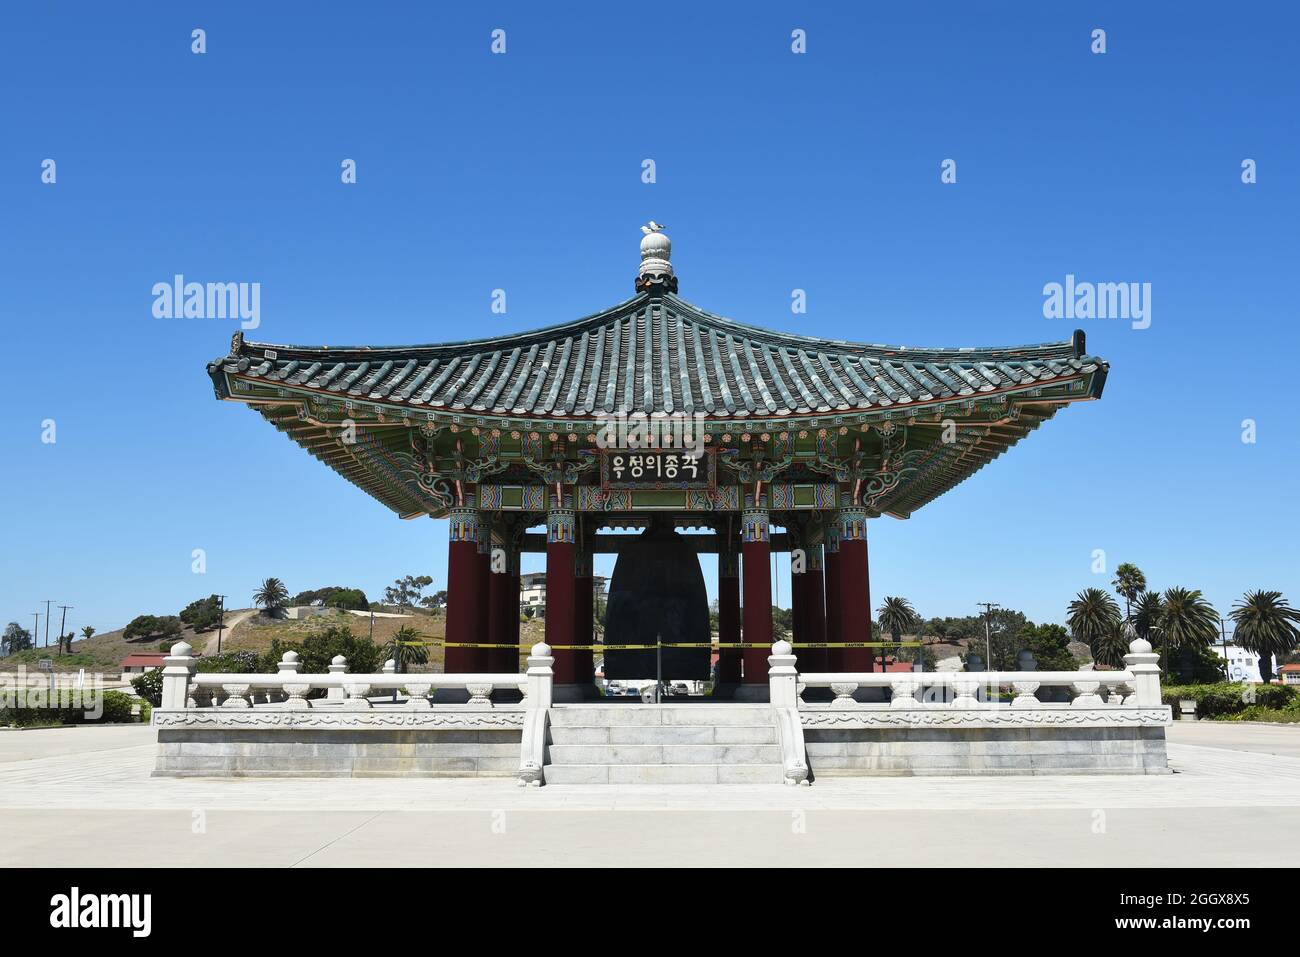 SAN PEDRO, KALIFORNIEN - 27. AUG 2021: Historisches Wahrzeichen, die koreanische Freundschaftsglocke im Angels Gate Park. Stockfoto